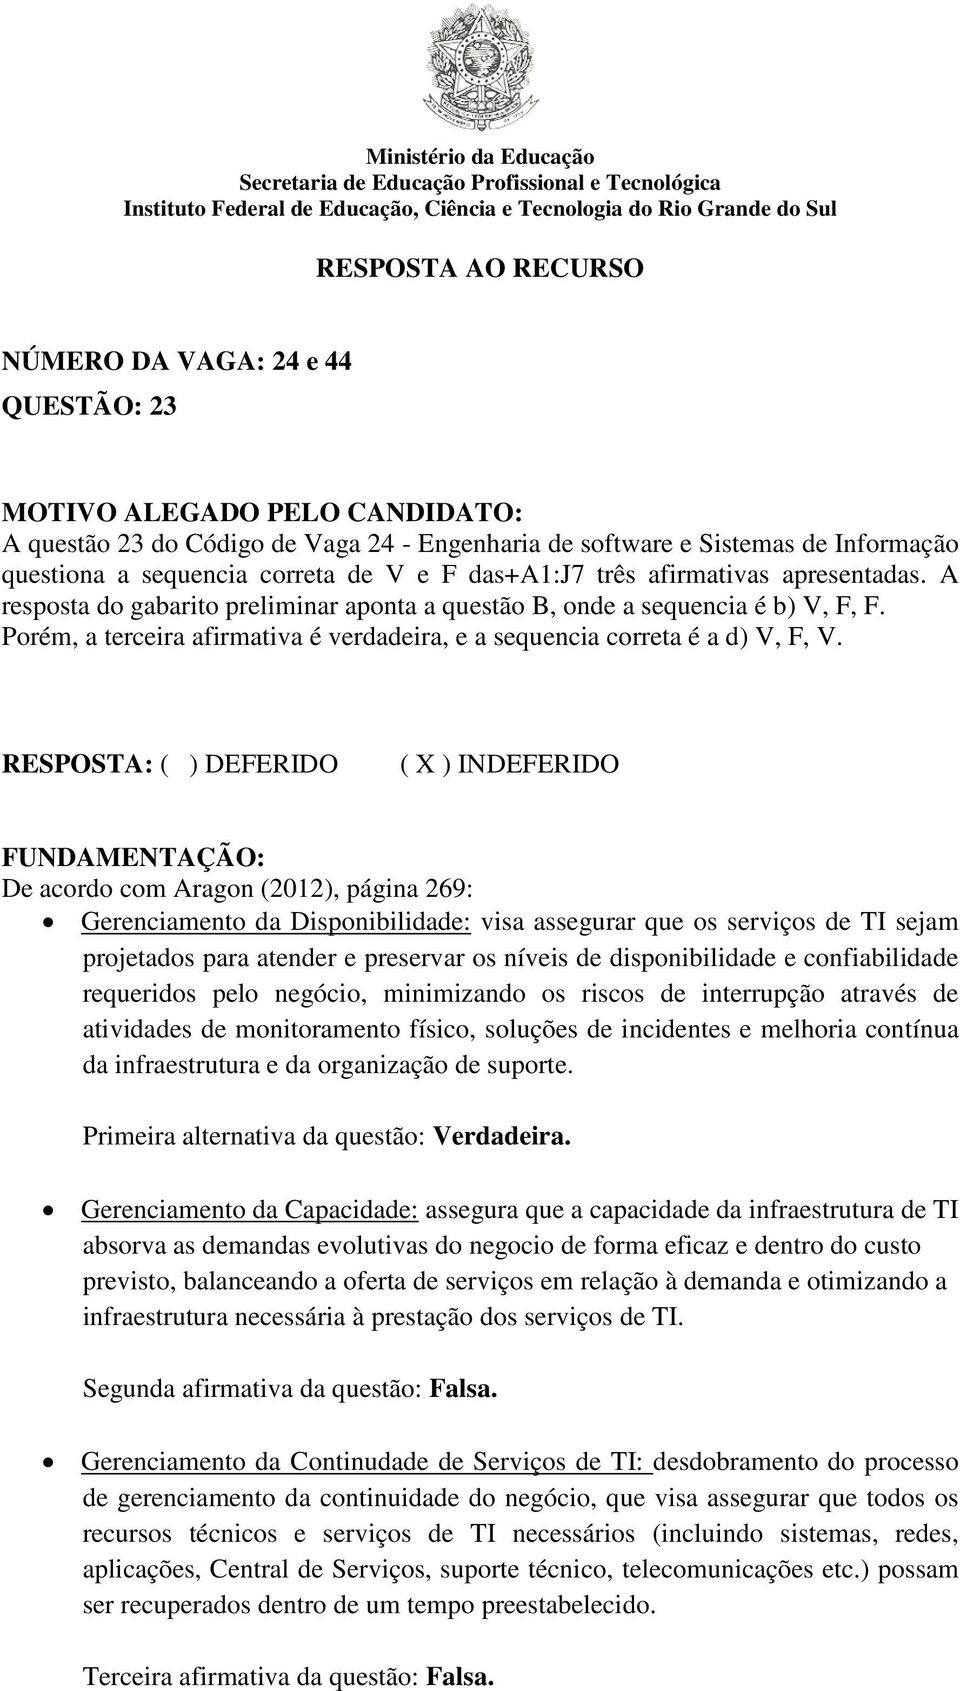 FUNDAMENTAÇÃO: De acordo com Aragon (2012), página 269: Gerenciamento da Disponibilidade: visa assegurar que os serviços de TI sejam projetados para atender e preservar os níveis de disponibilidade e